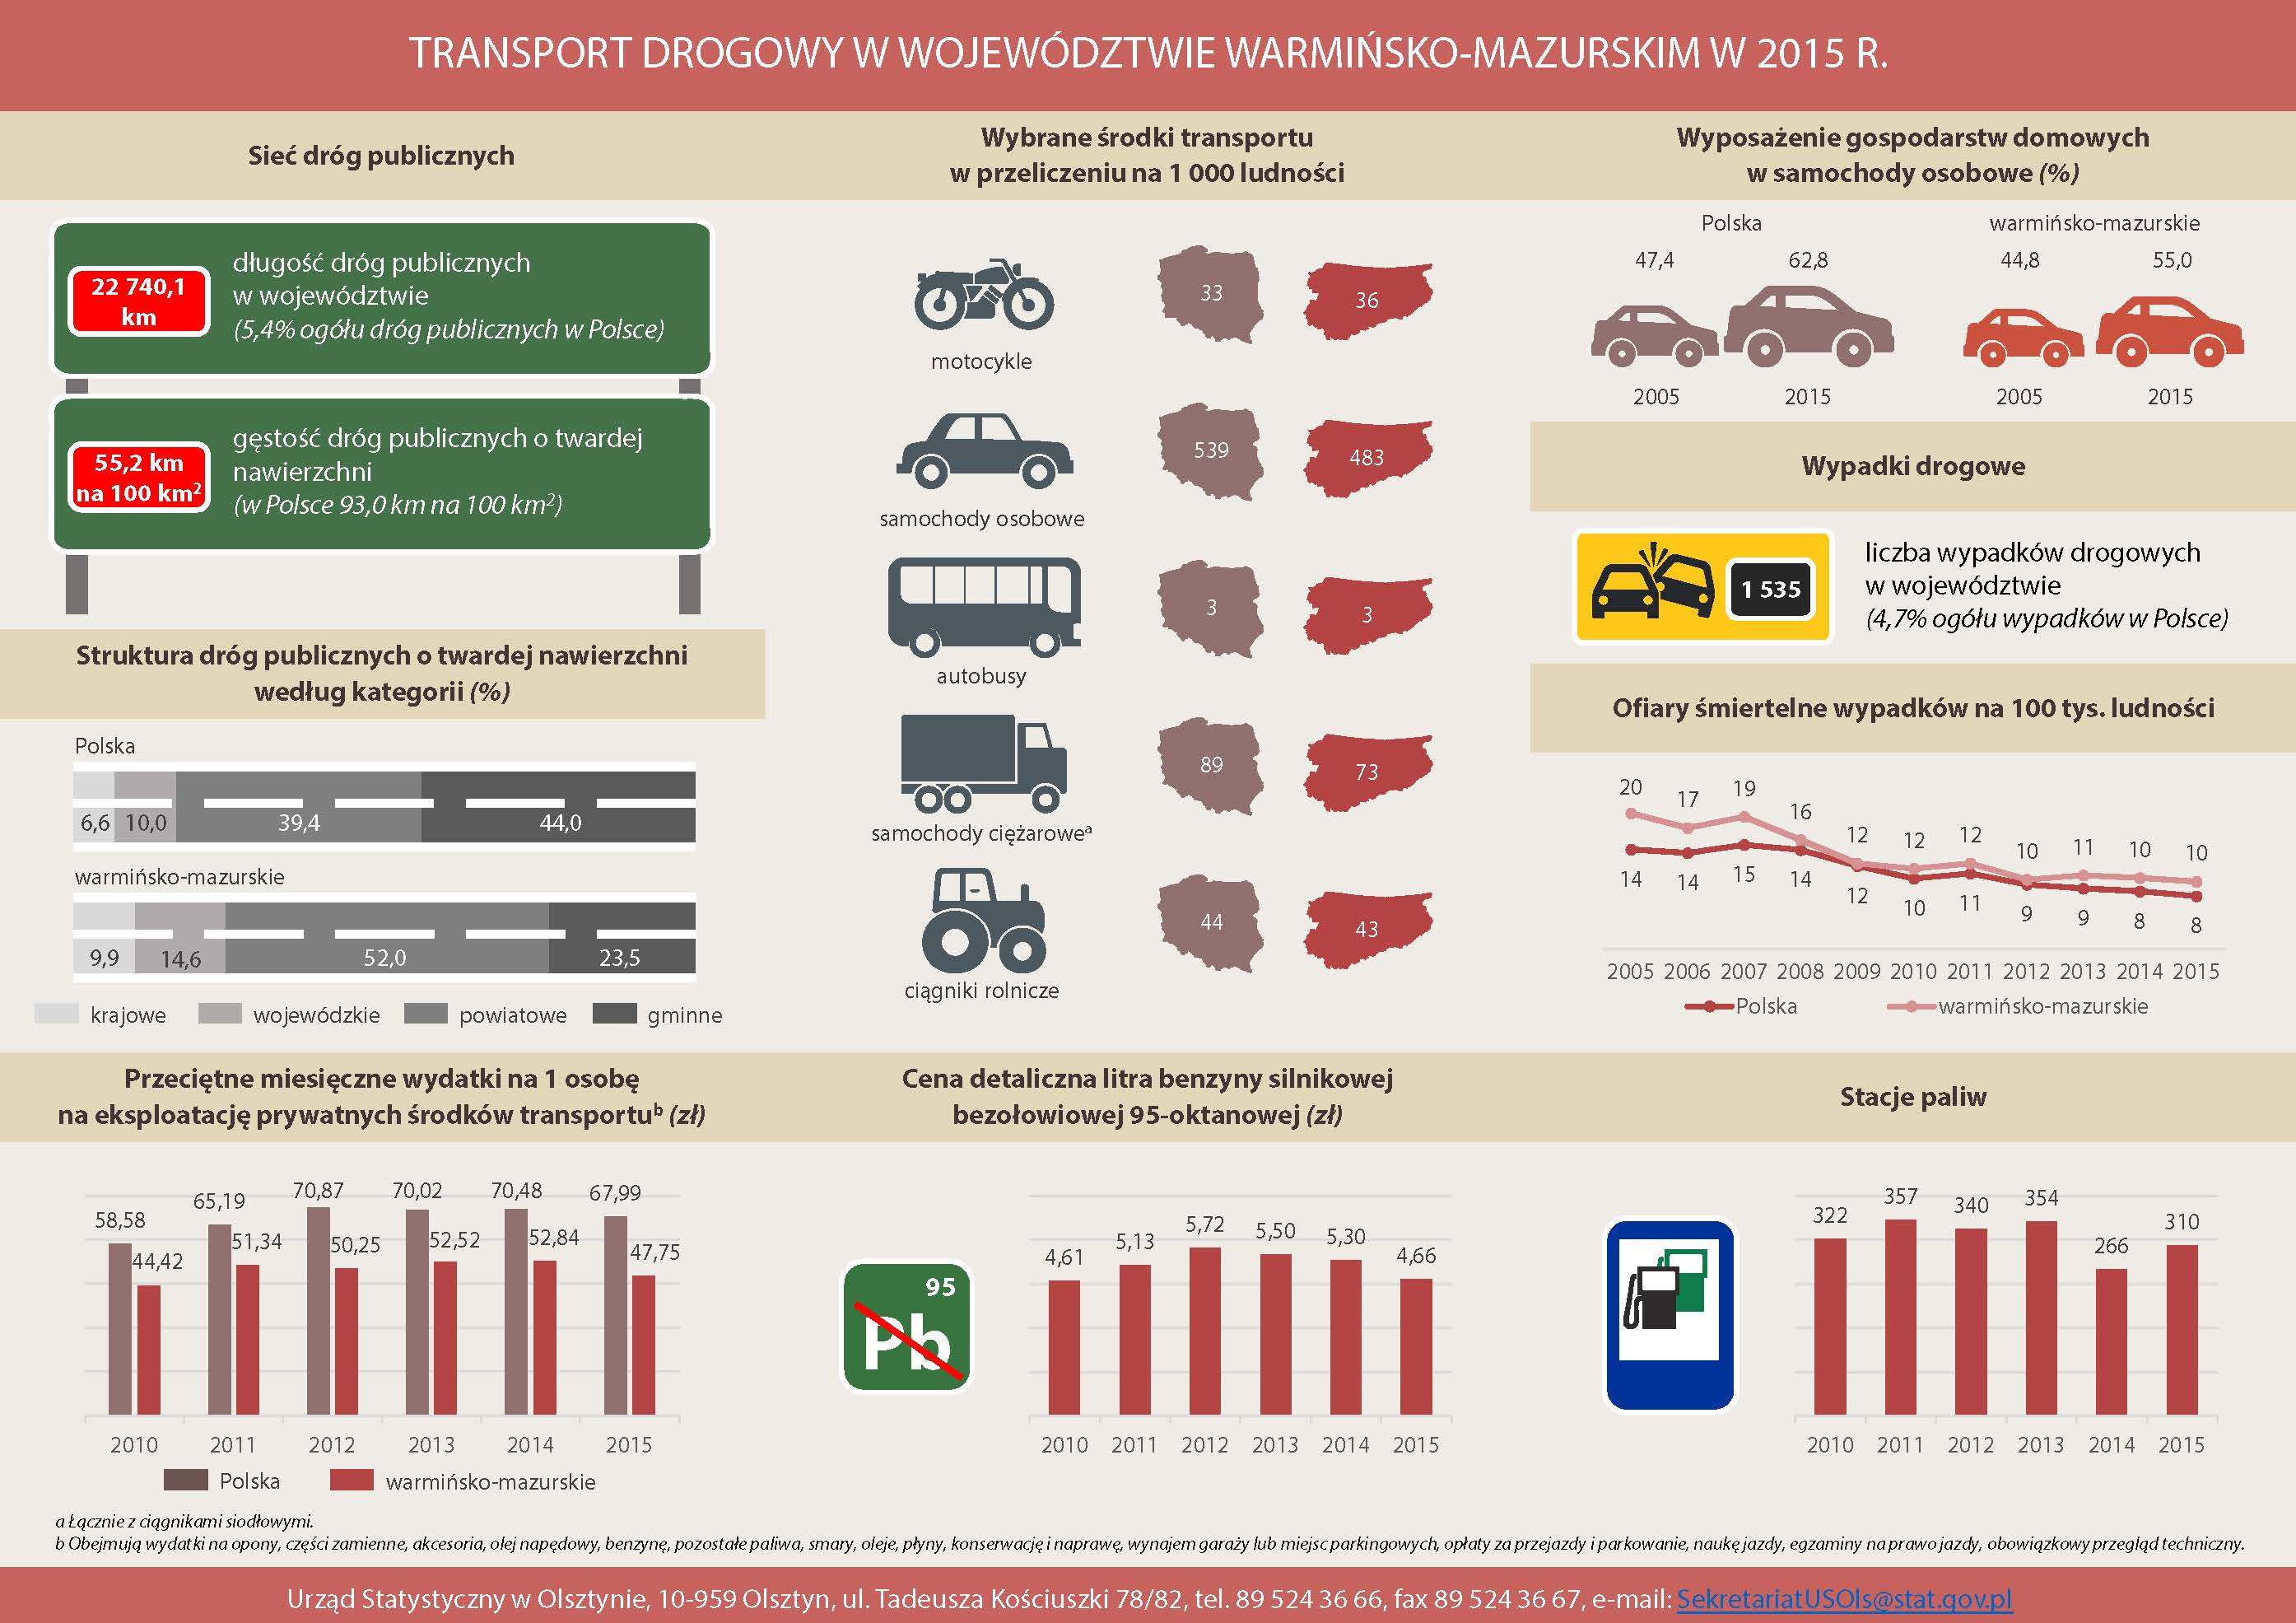 transport drogowy 2015 Transport drogowy w 2015r.